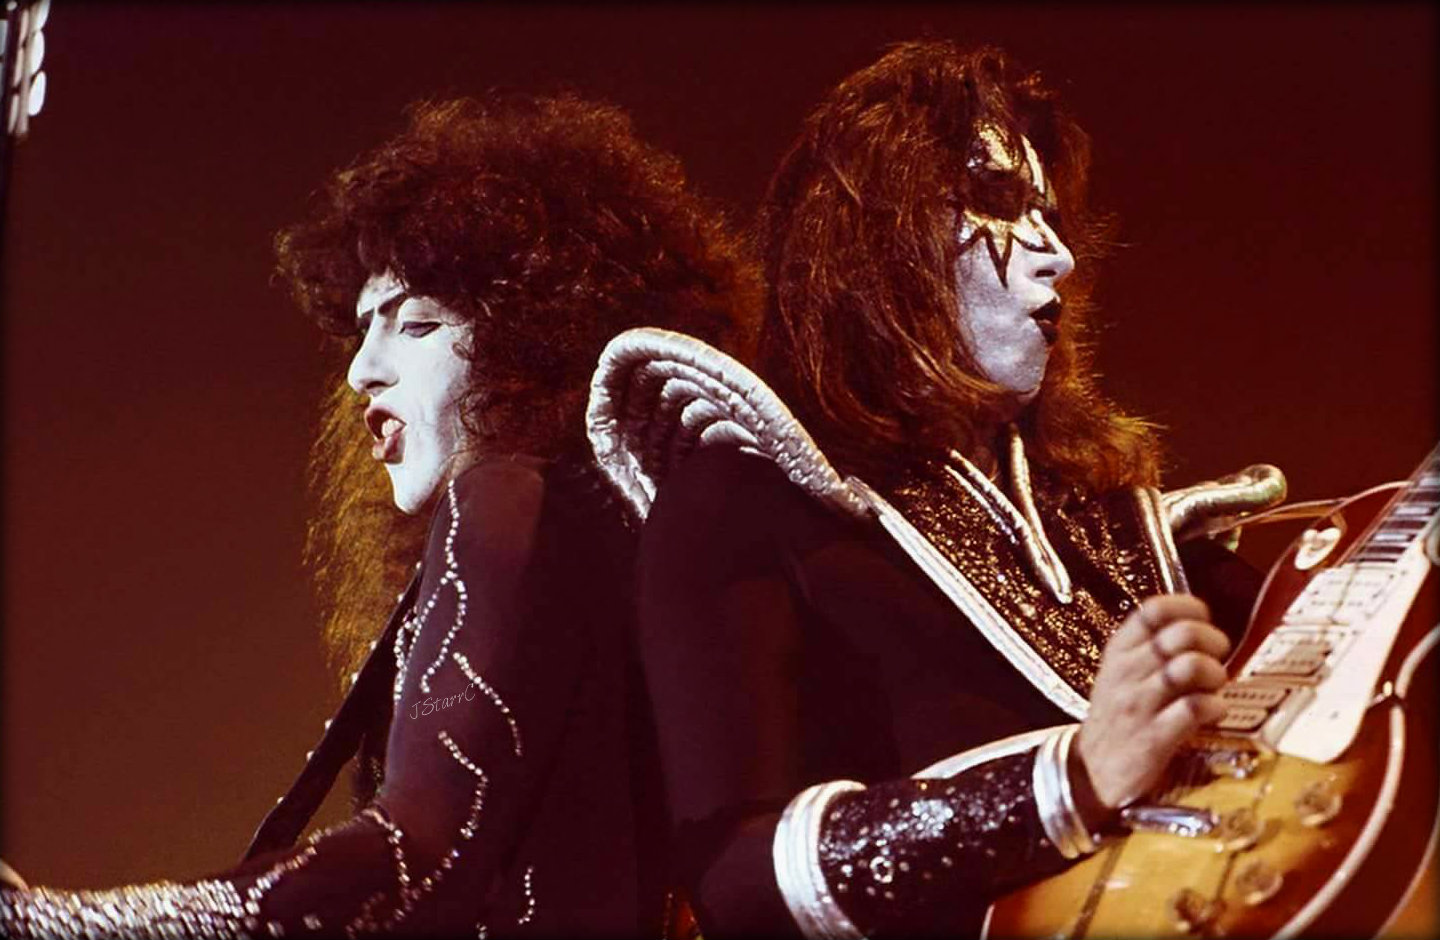 Ace and Paul ~Raleigh, North Carolina...November 27, 1976